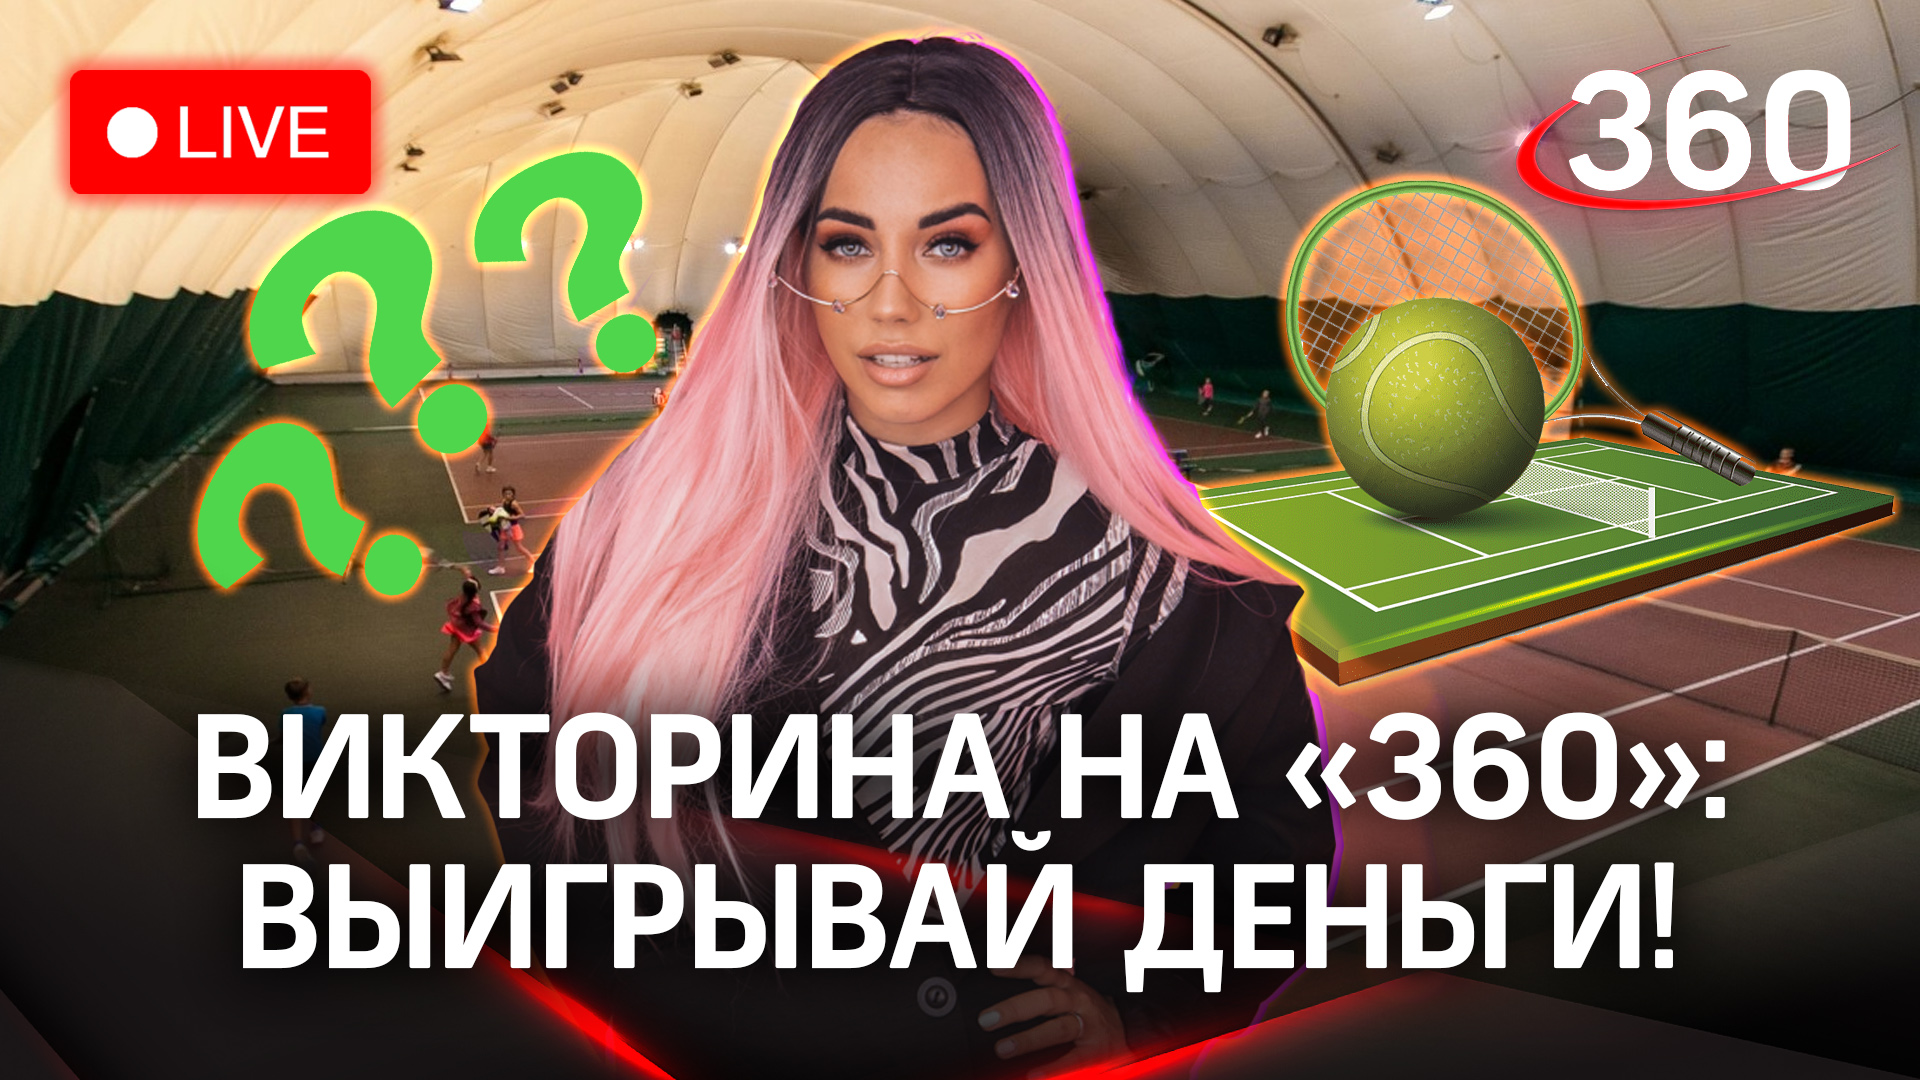 Отвечай и выигрывай деньги! Викторина на «360»: теннисный клуб «Николино», Одинцовский г.о.